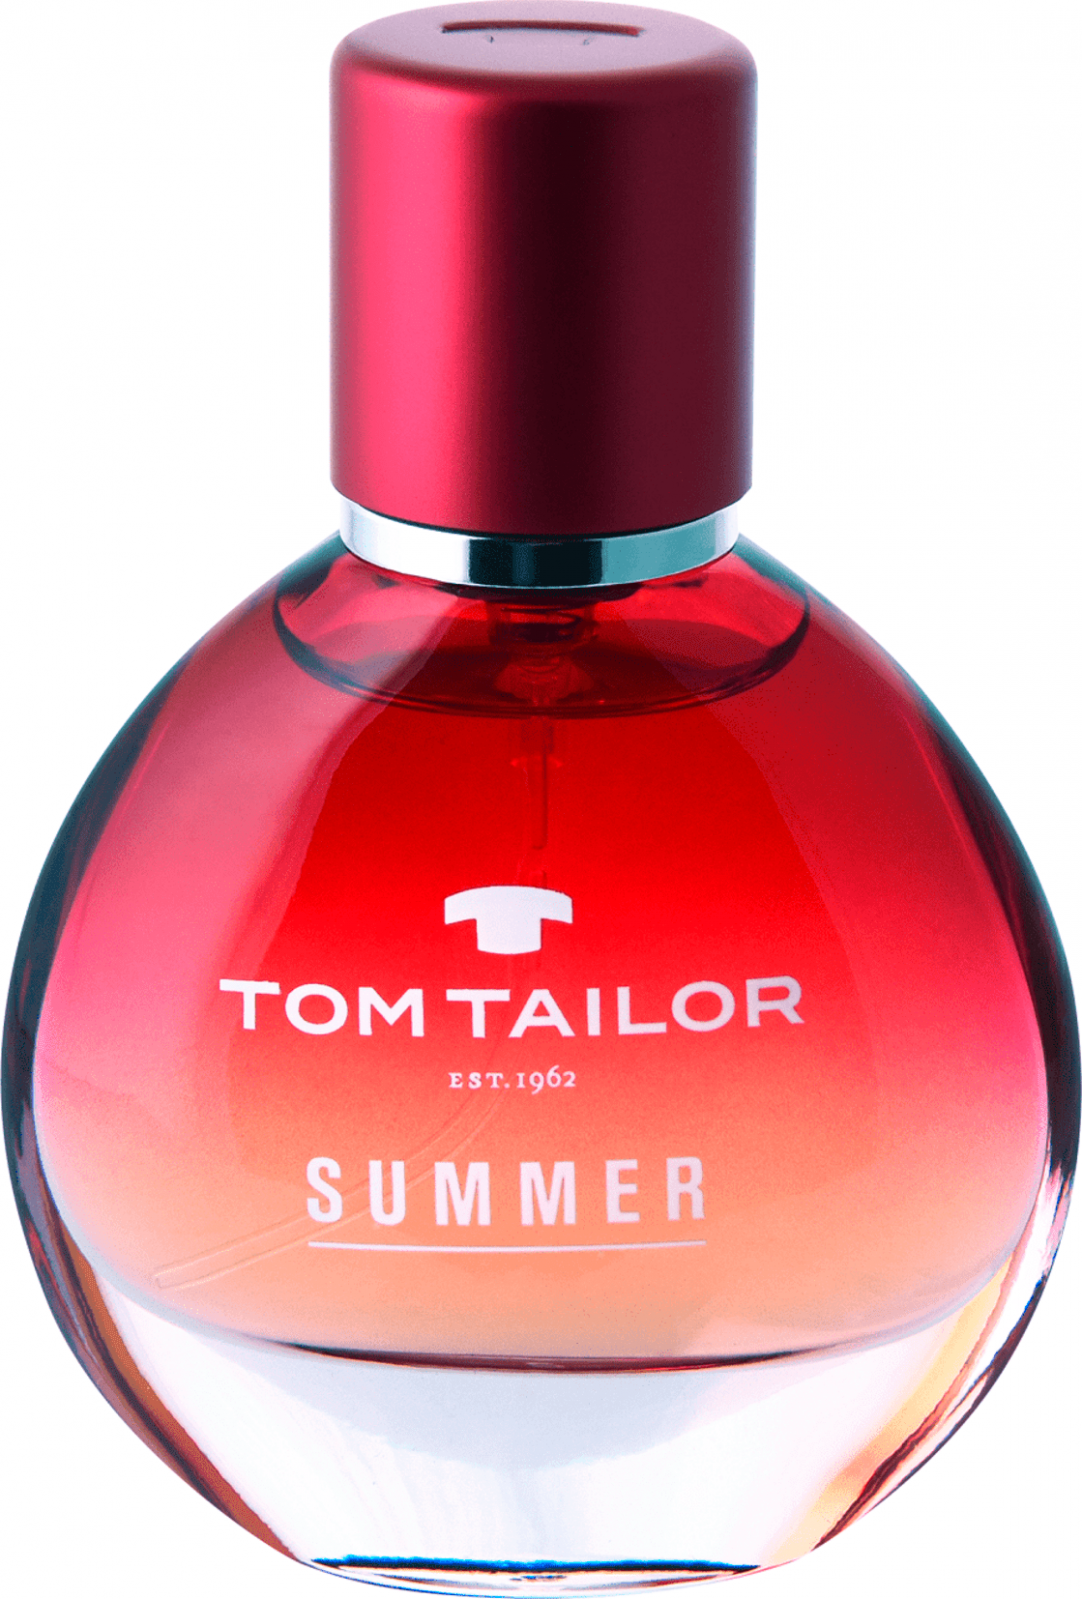 Том тейлор парфюм. Tom Tailor духи. Tom Tailor est 1962 духи. Том Тейлор духи женские. Духи Tom Tailor BODYTALK.